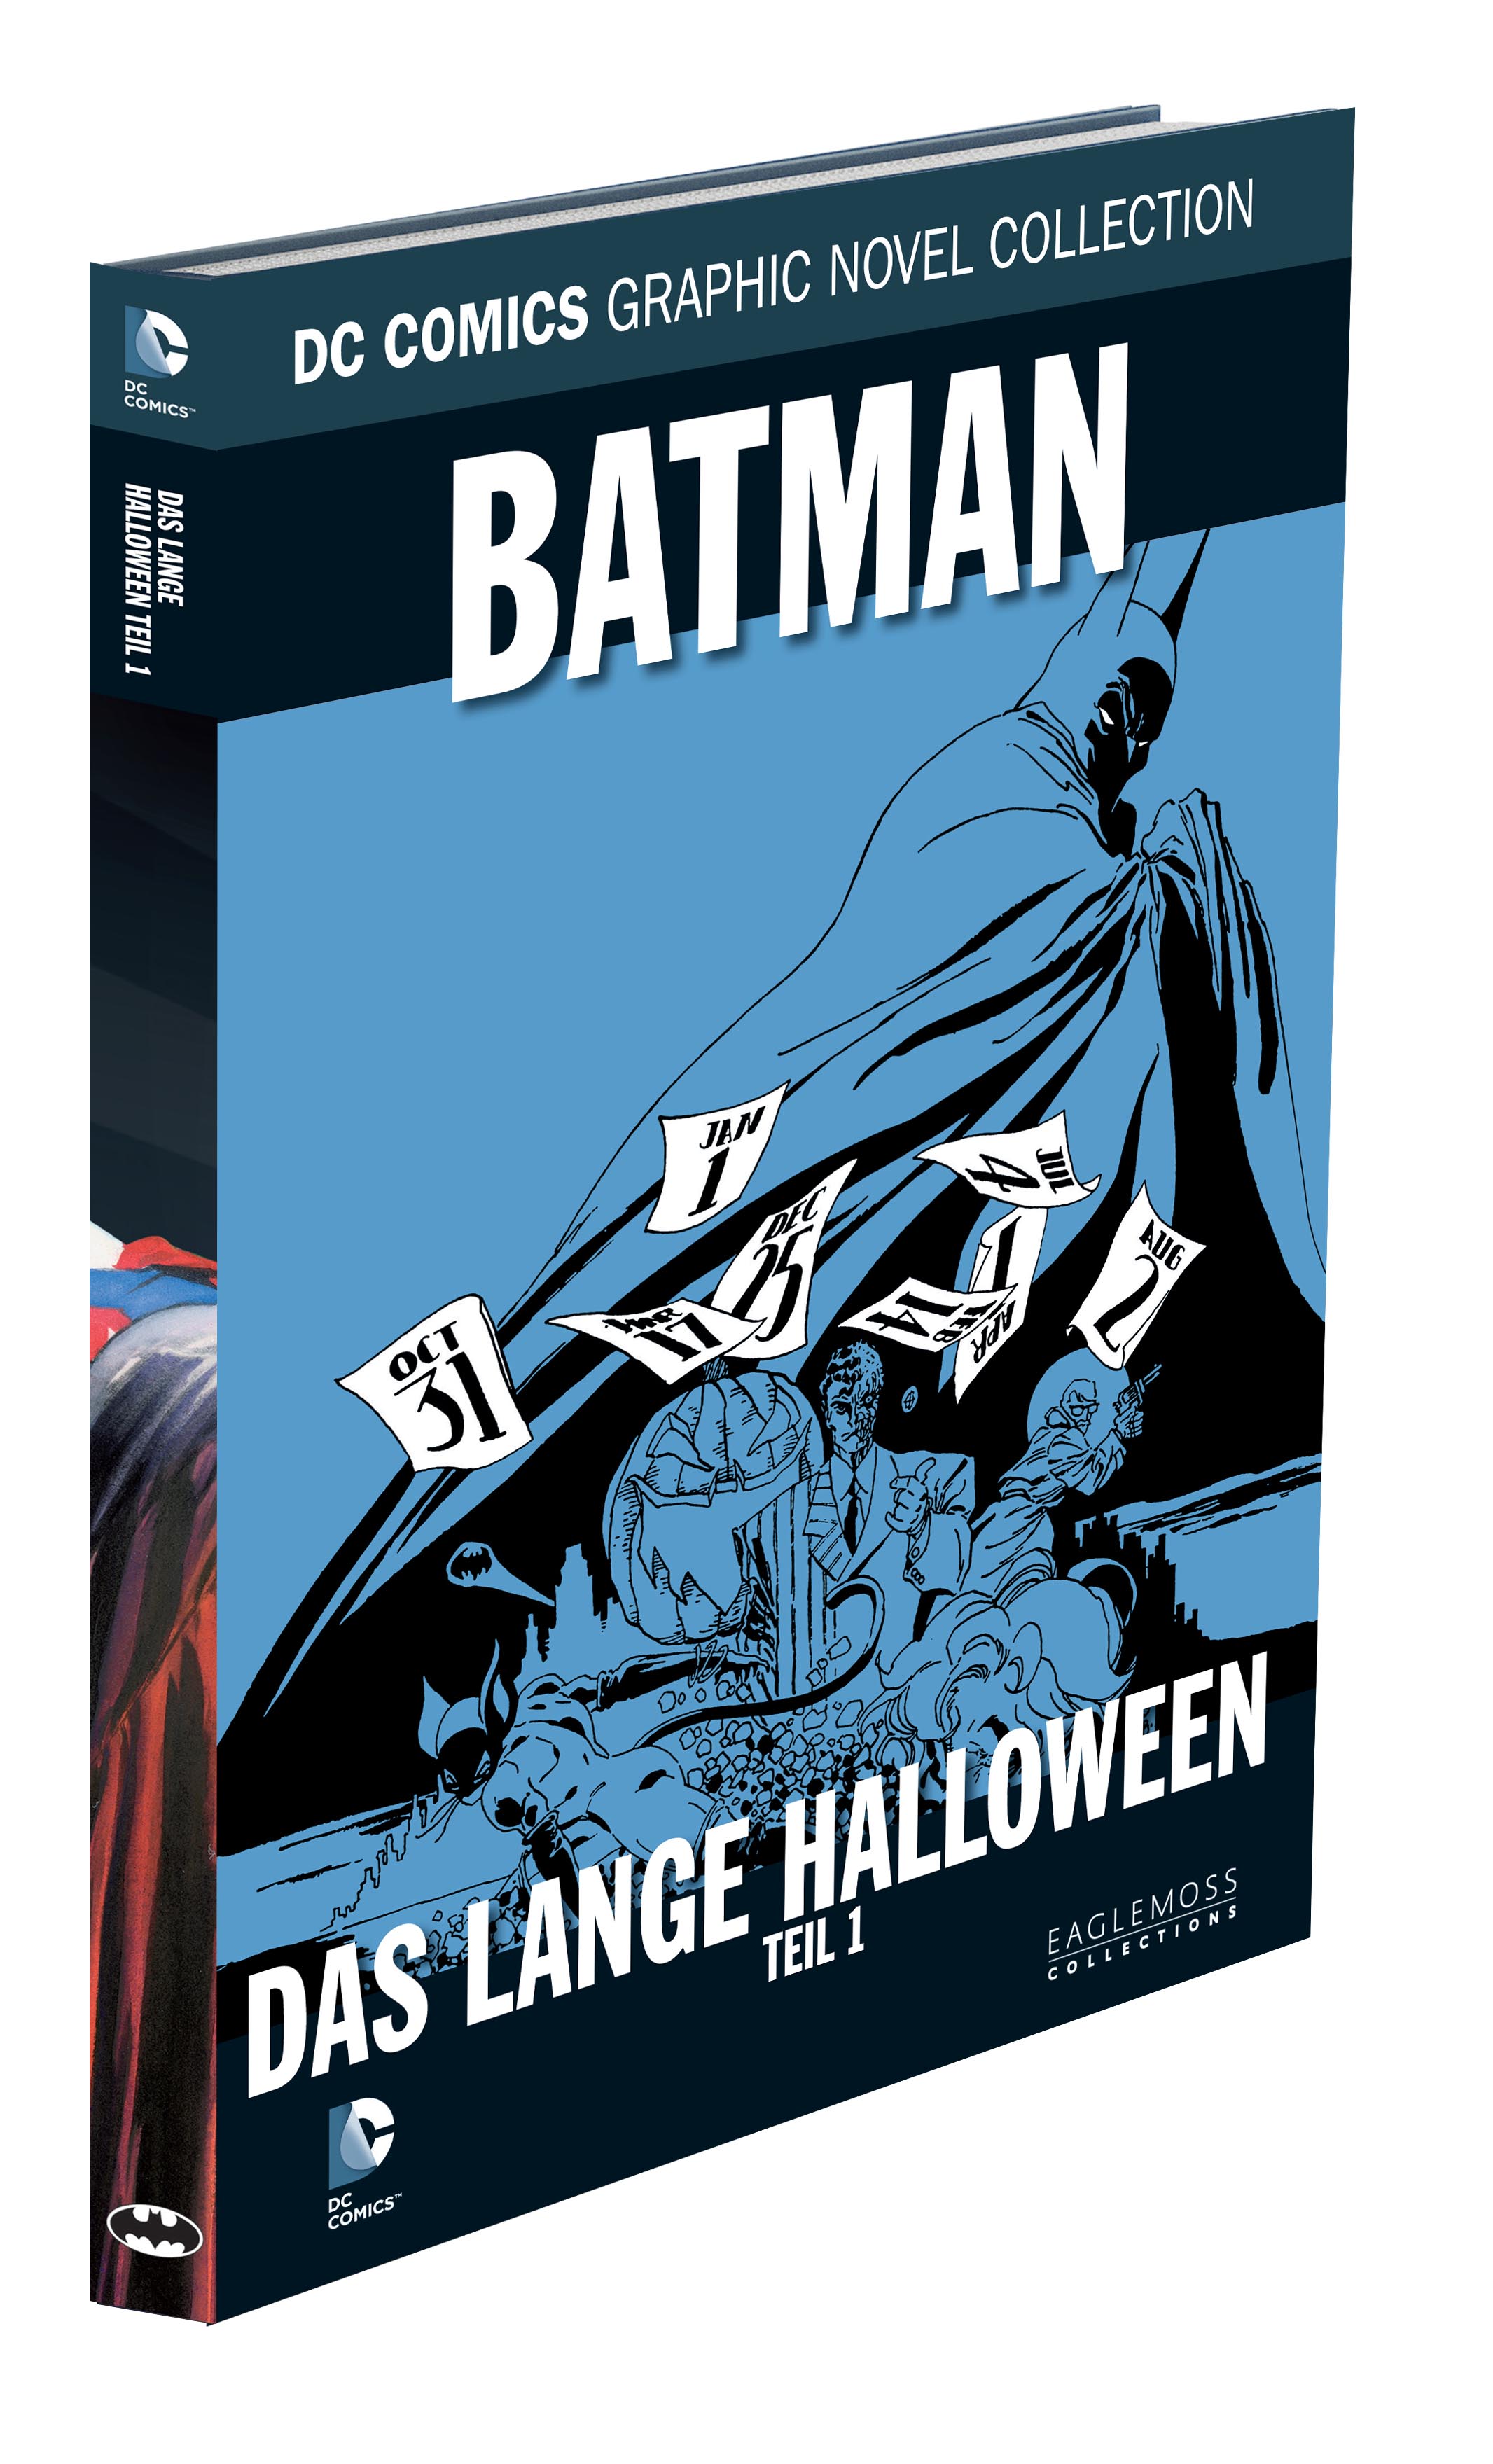 DC Comics Graphic Novel Collection Batman - Das lange Halloween Teil 1